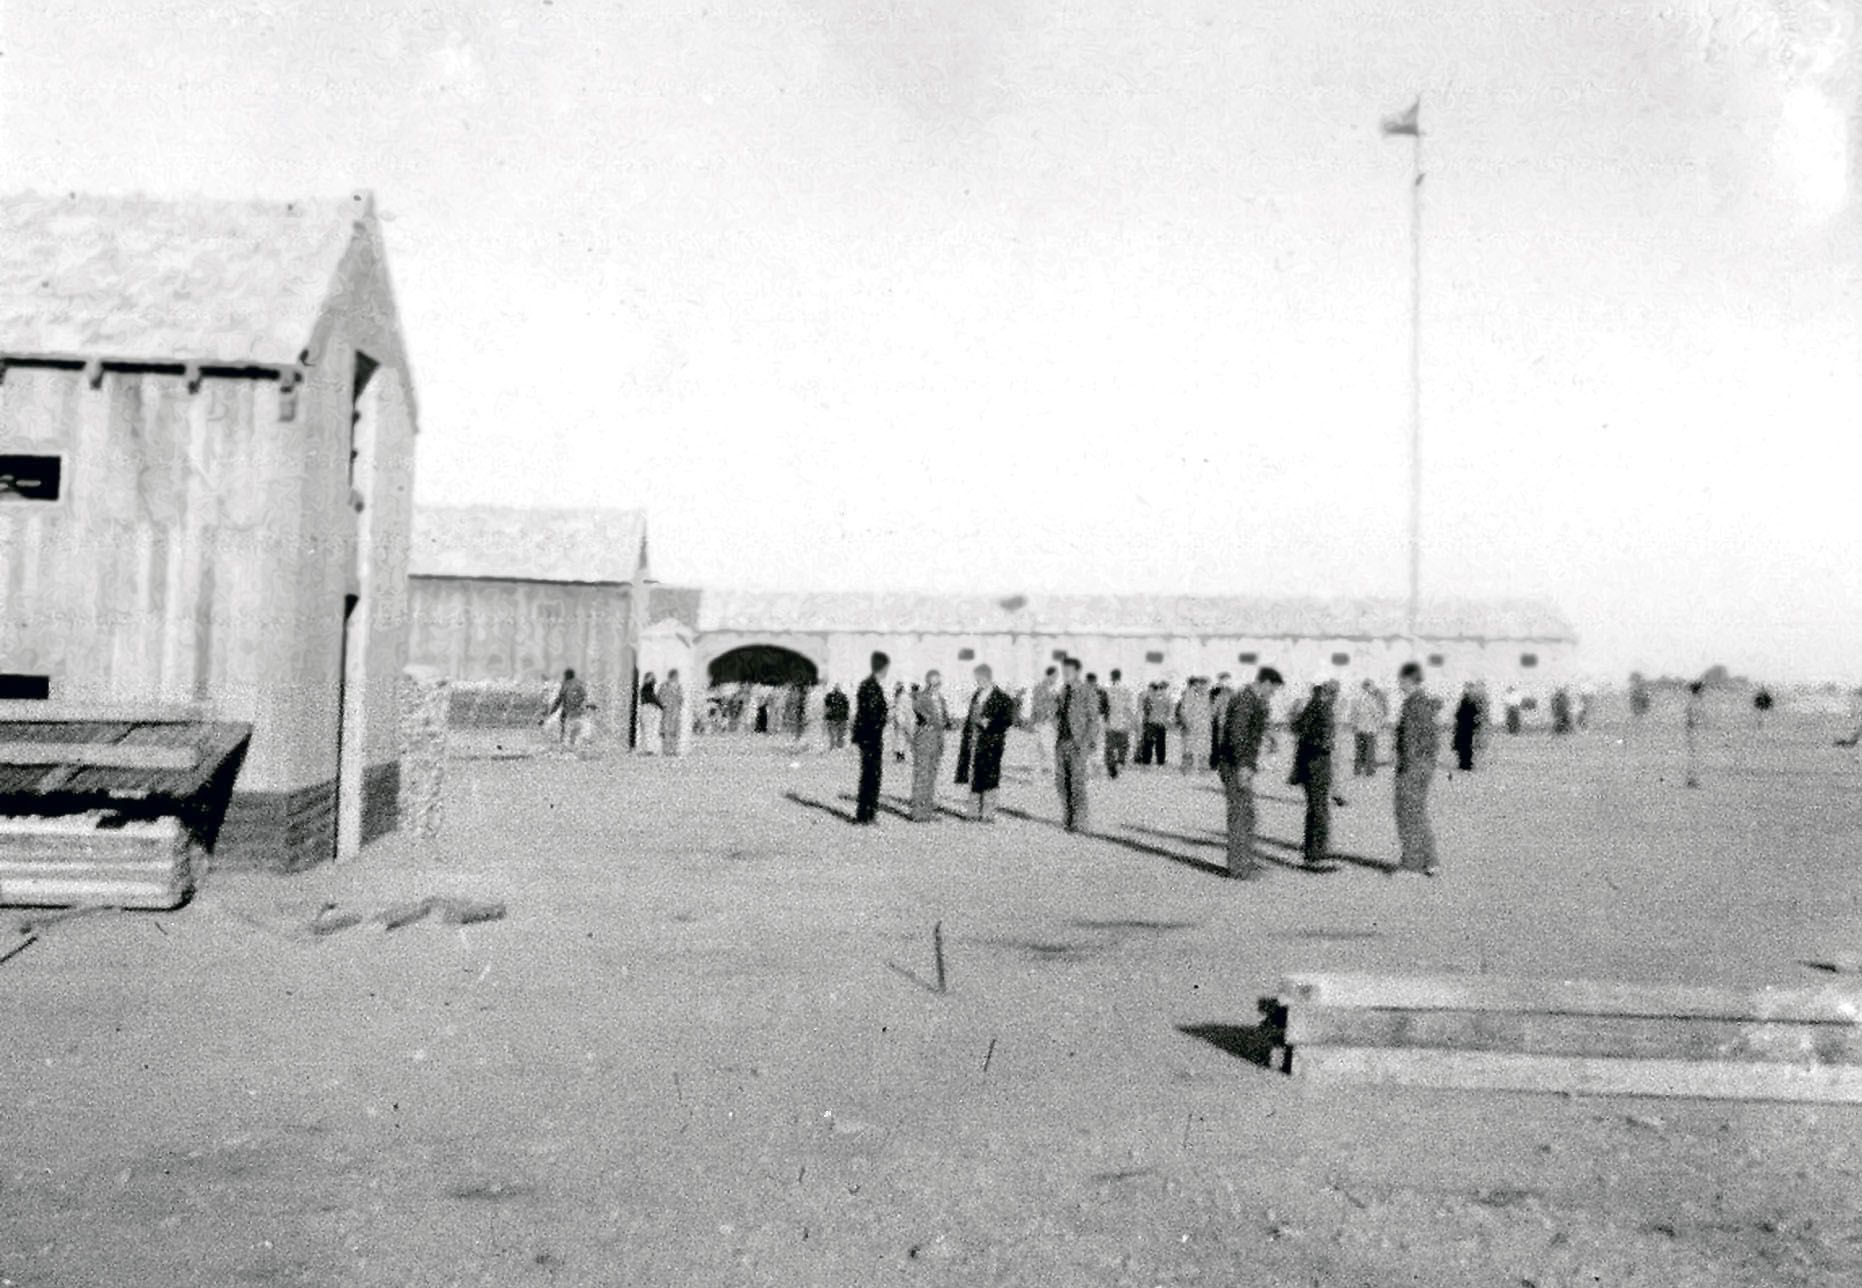 El camp de concentració franquista més temut era el conegut com es Campament a Formentera